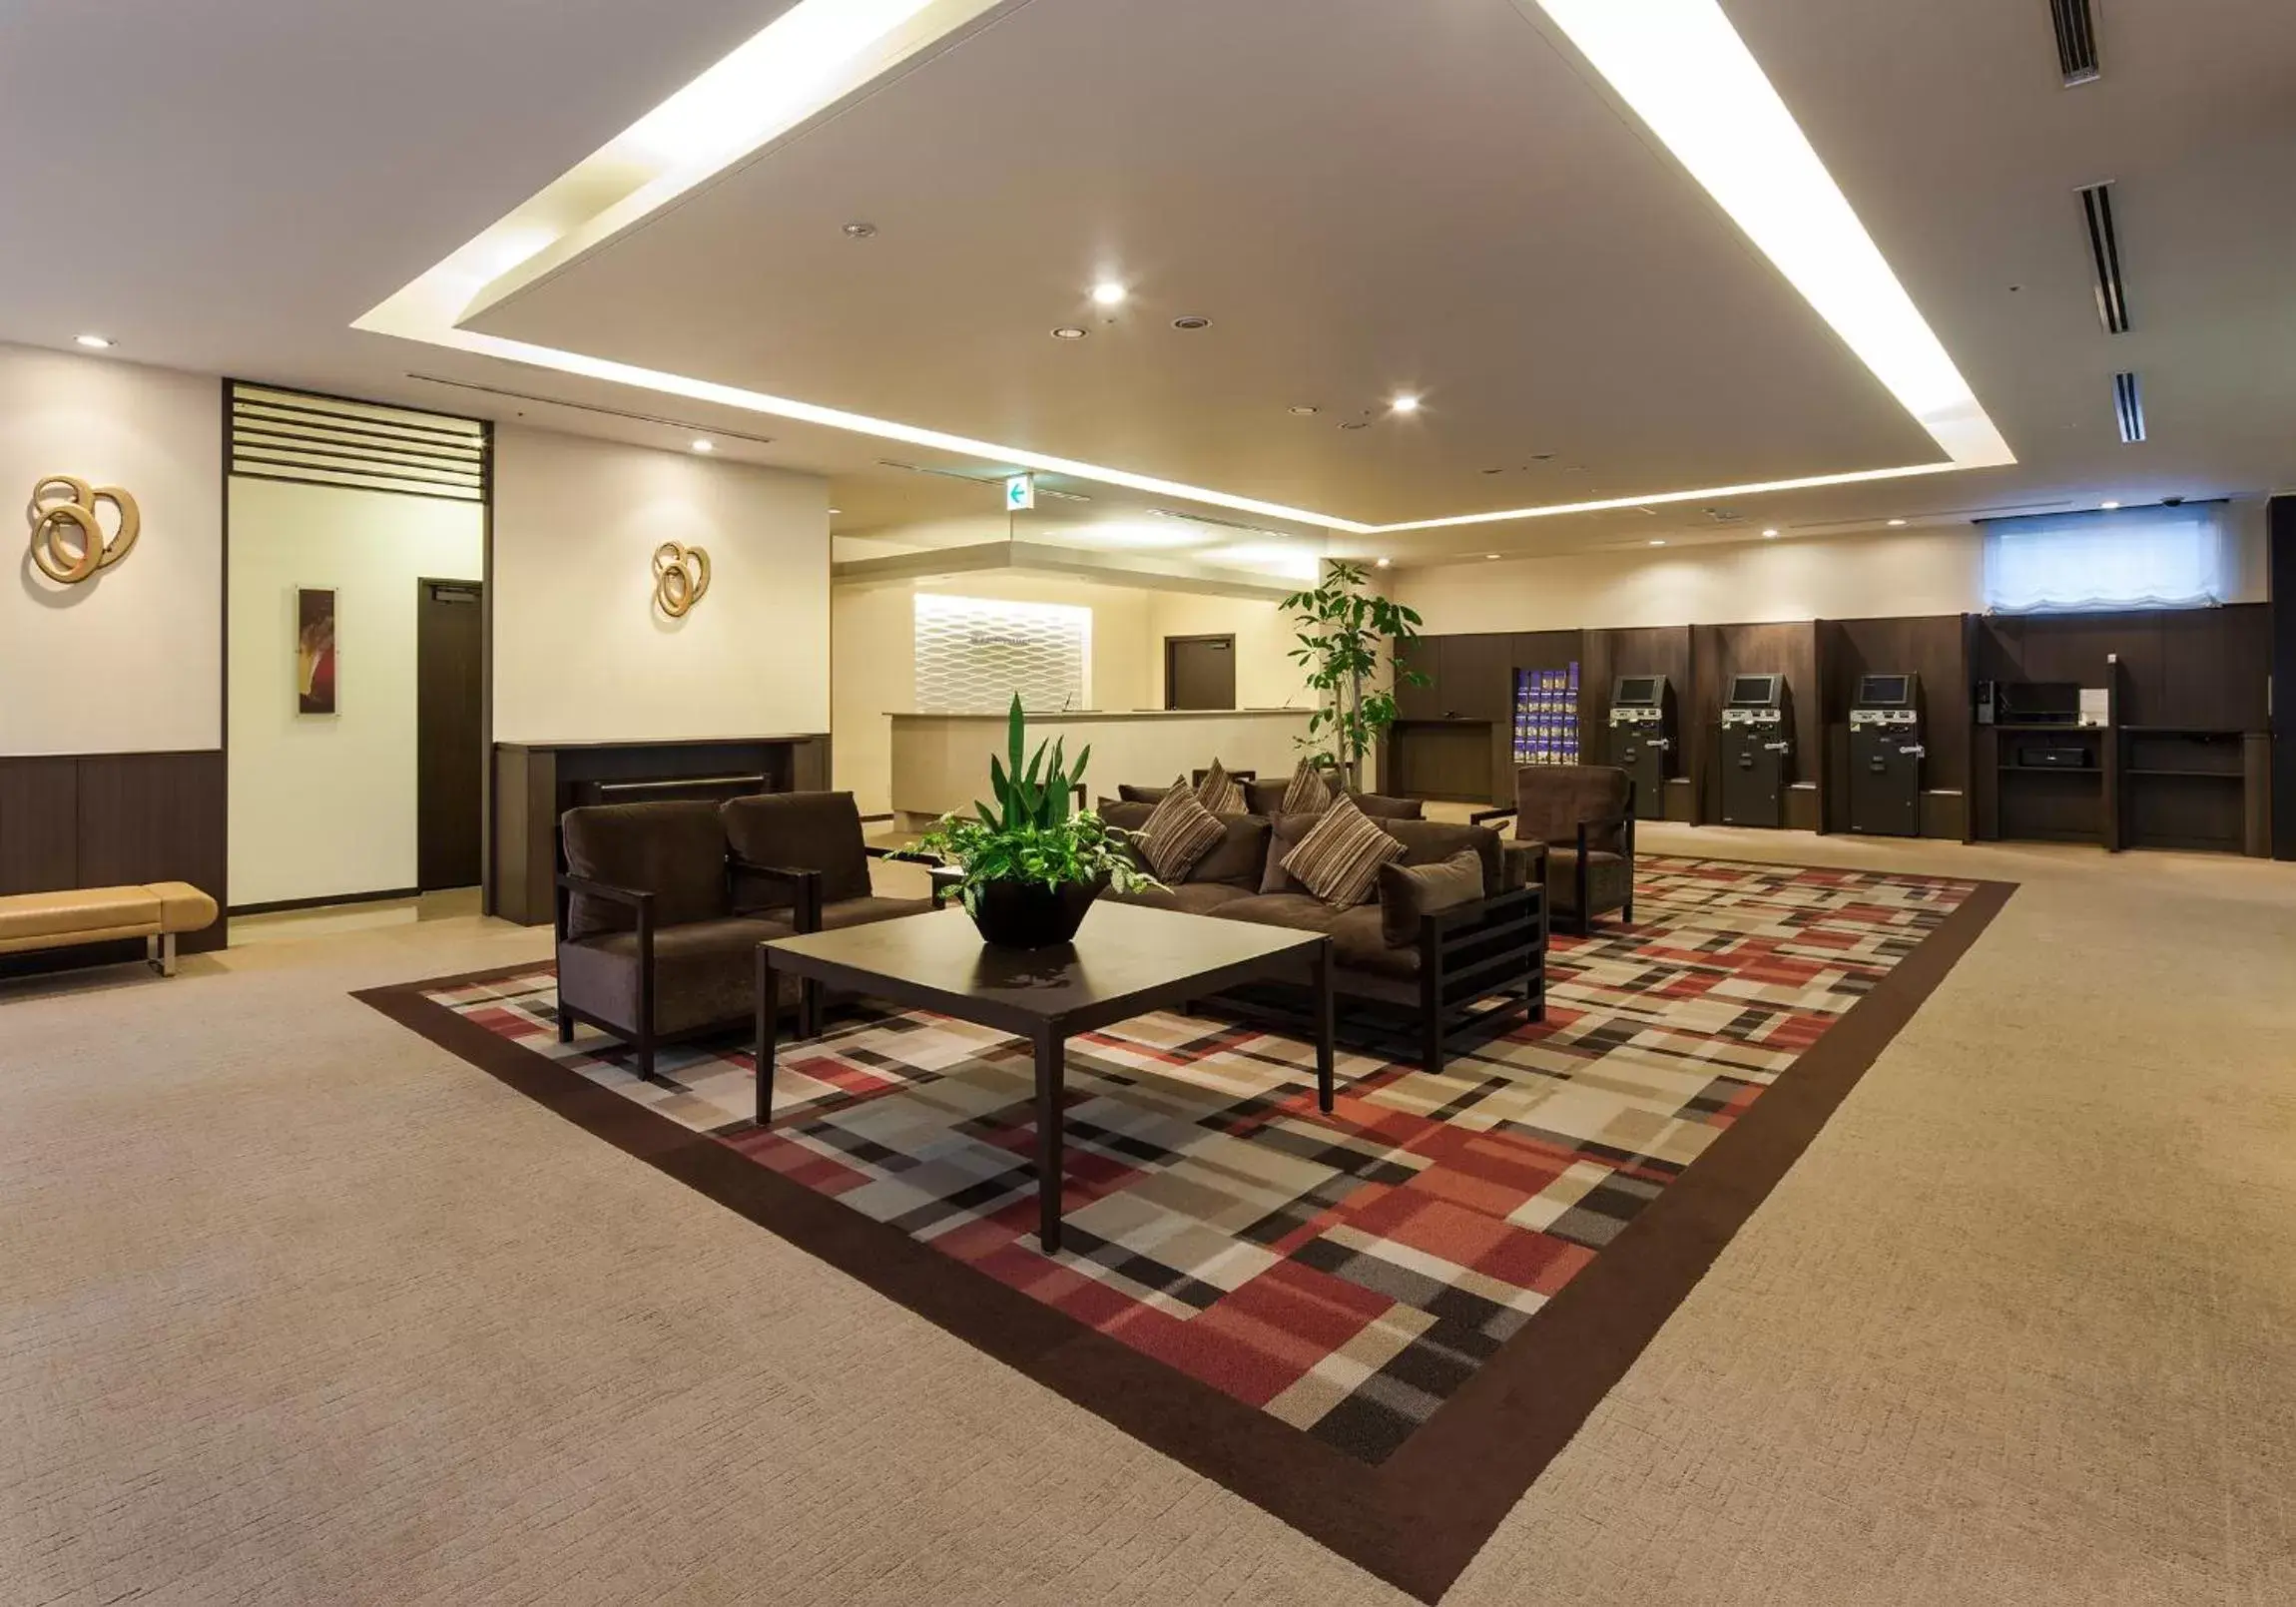 Lobby or reception, Lobby/Reception in Daiwa Roynet Hotel Oita